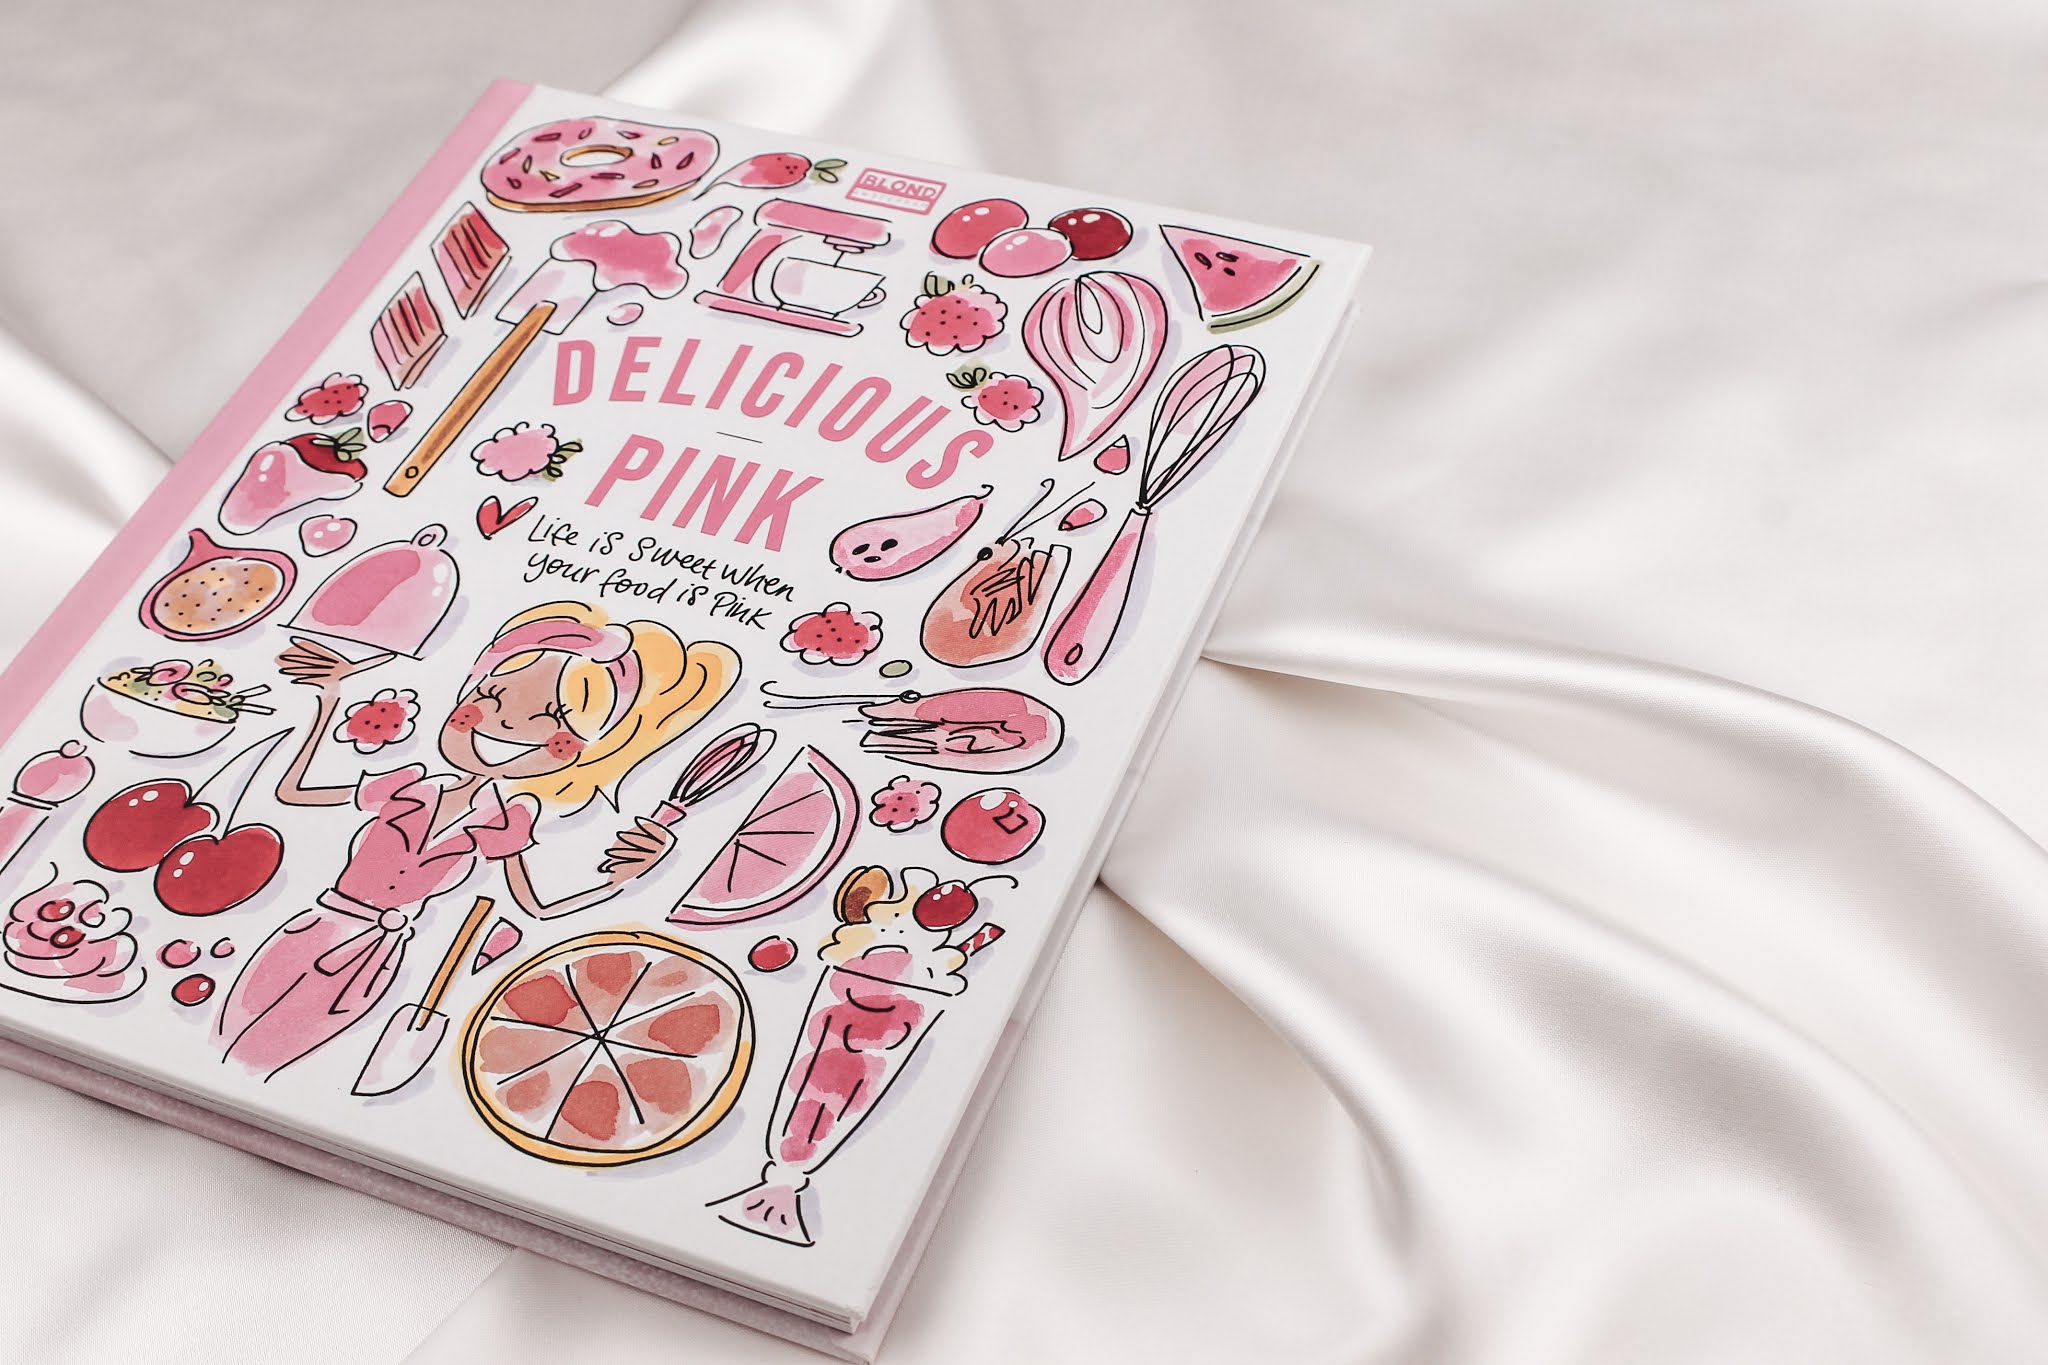 Overredend Luchtvaartmaatschappijen Excursie Blond Amsterdam - Delicious Pink Kookboek - Elegantic